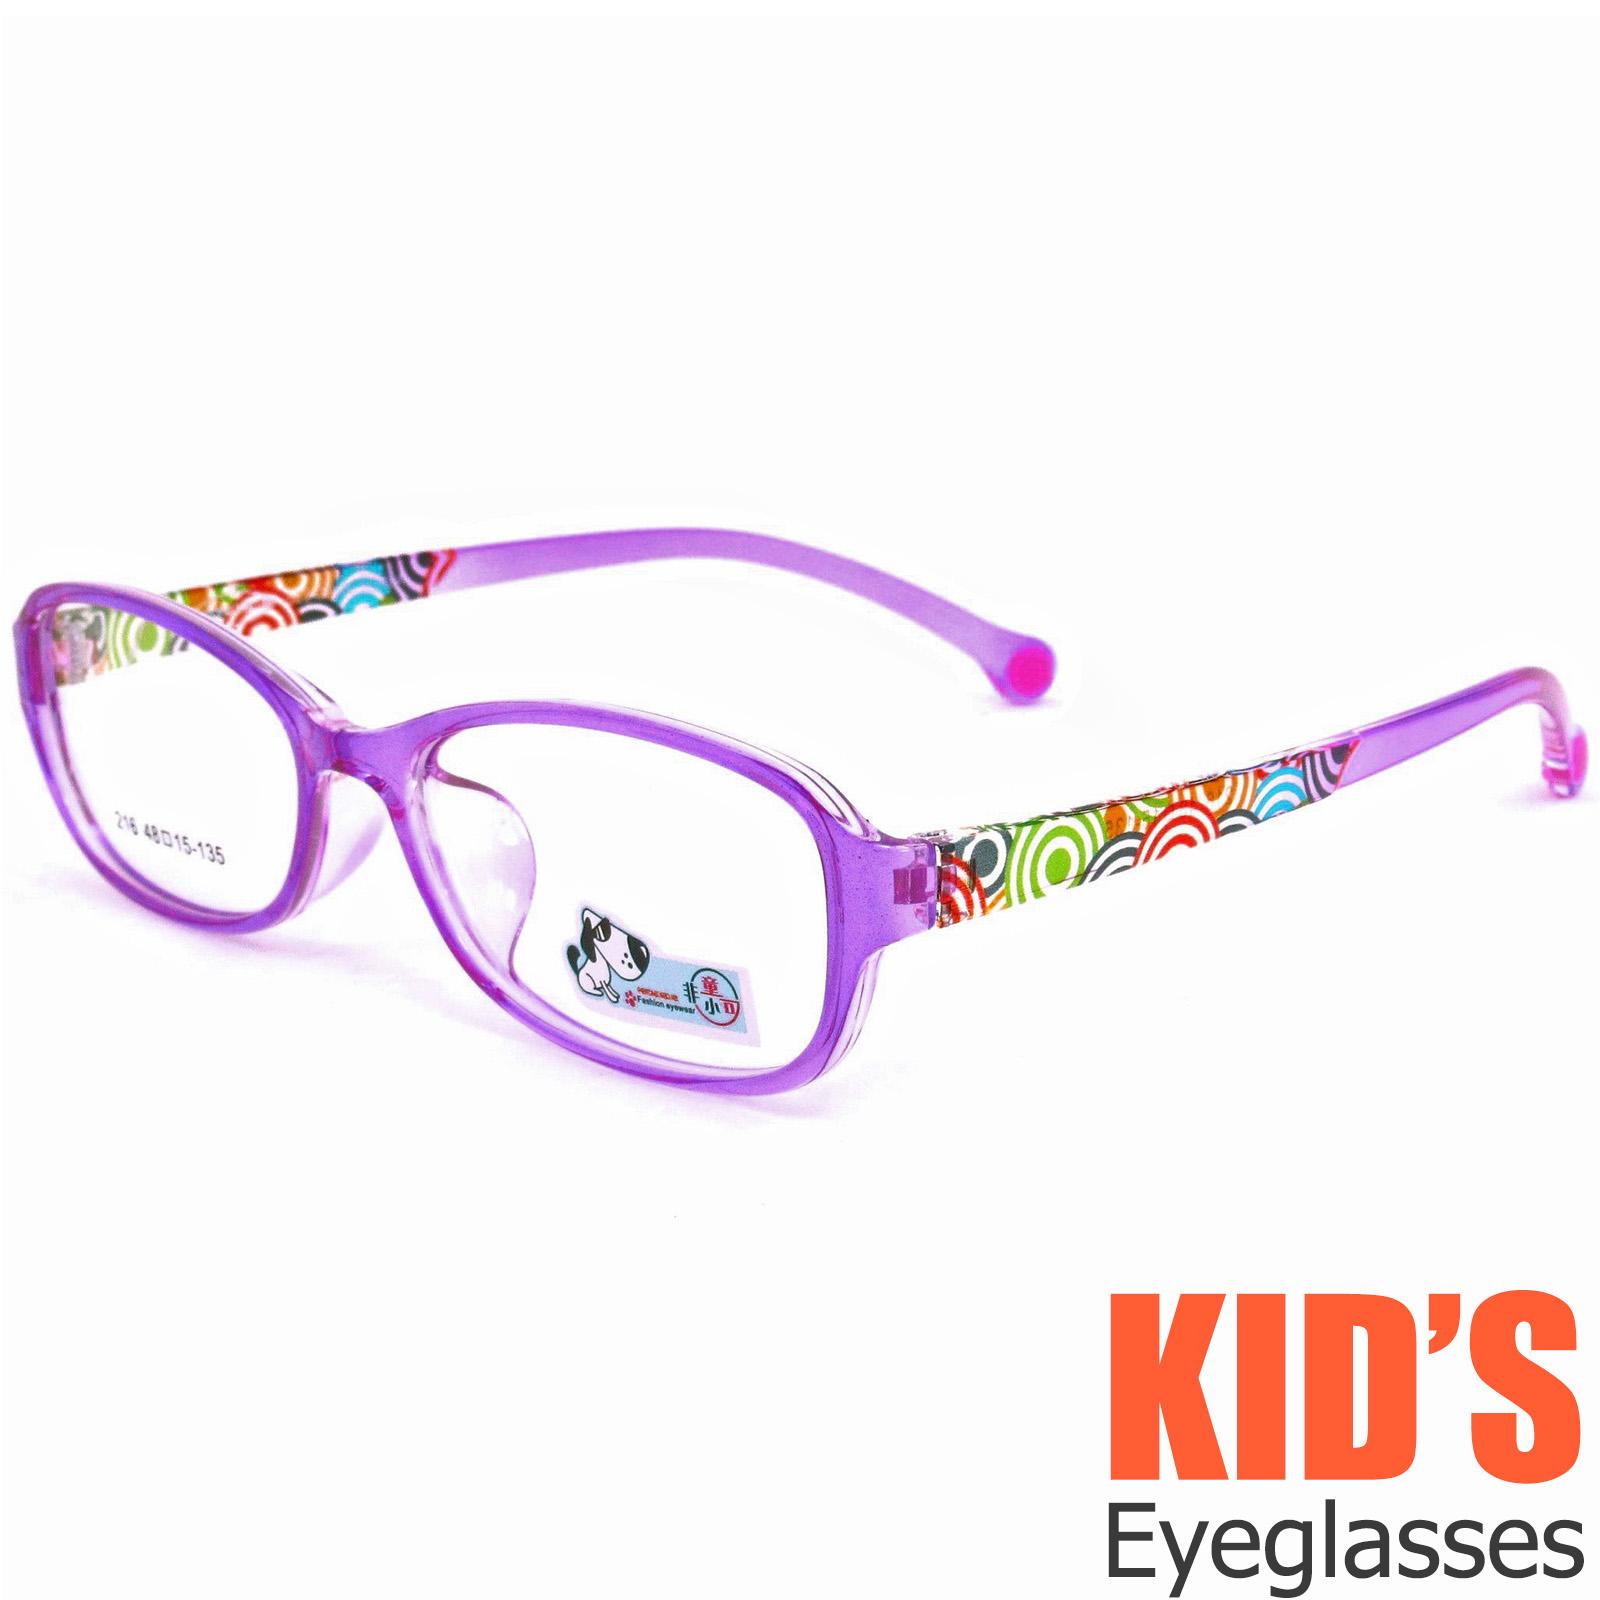 แว่นตาเกาหลีเด็ก Fashion Korea Children แว่นตาเด็ก รุ่น 216 สีม่วงกรอบใส กรอบแว่นตาเด็ก Pillow ทรงวงรียาว Eyeglass baby frame ( สำหรับตัดเลนส์ ) วัสดุ PC เบา ขาข้อต่อ Kid leg joints Plastic Grade A material Eyewear Top Glasses